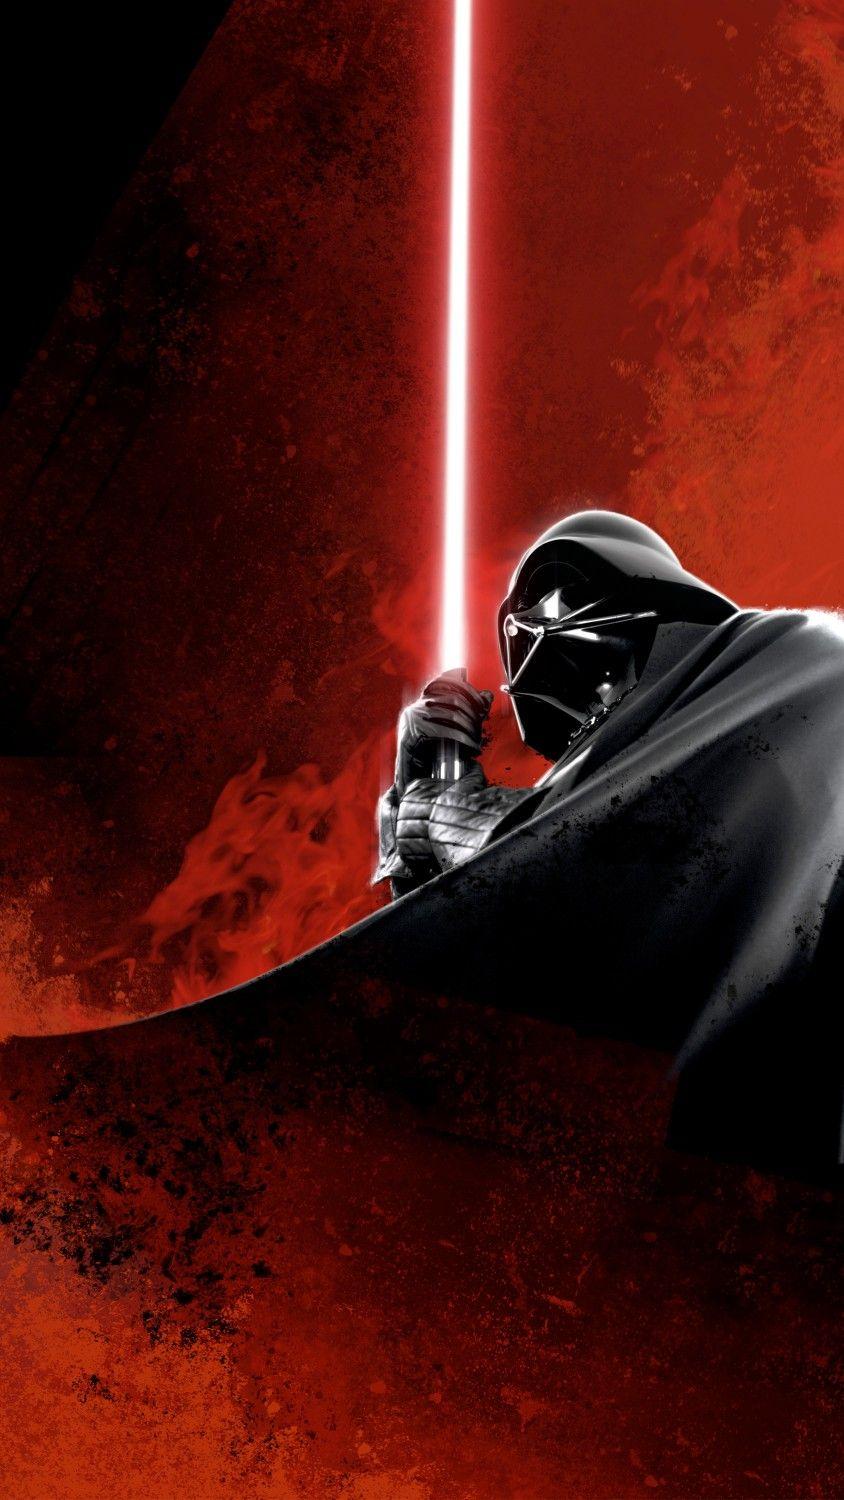 Darth Vader art wallpaper. Star wars art